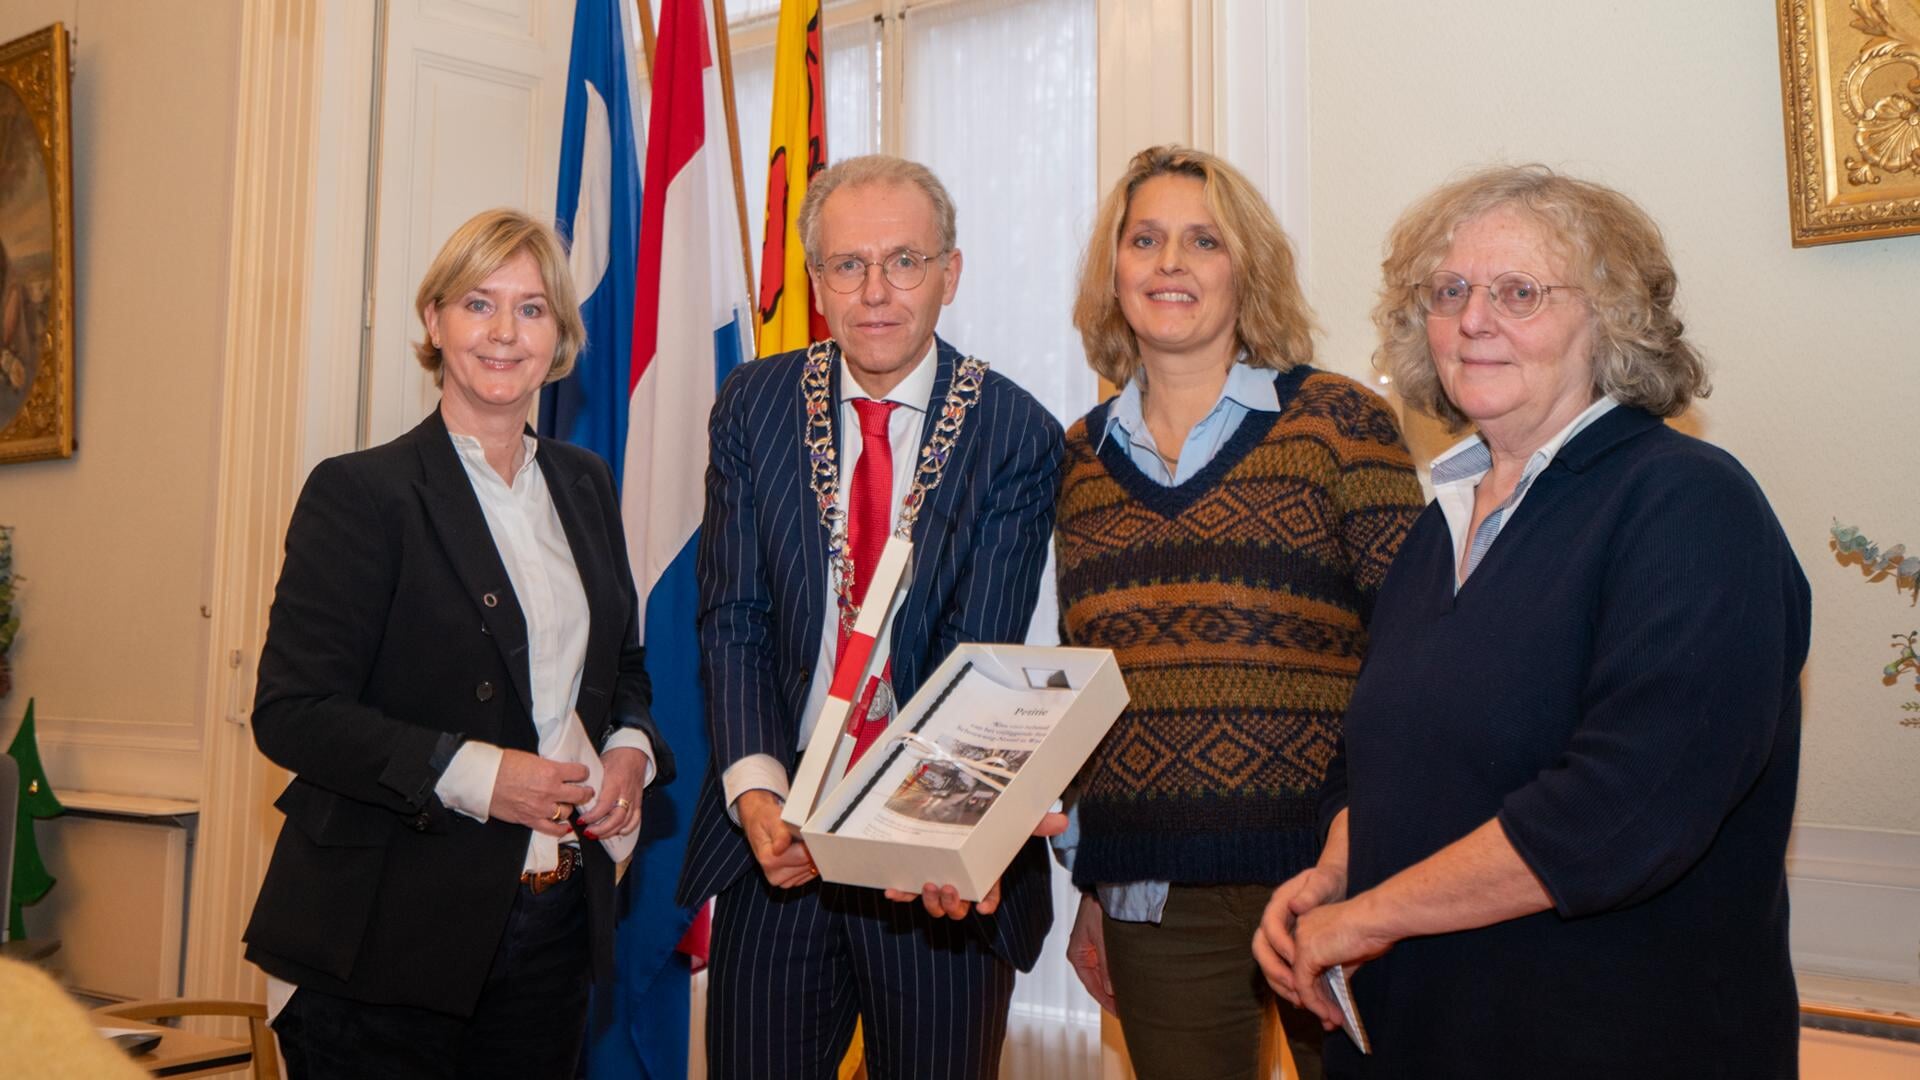 De initiatiefnemers (vlnr) Monique Rueb, Françoise van Leeuwen en Jos O’Herne overhandigen de petitie aan burgemeester De Lange.